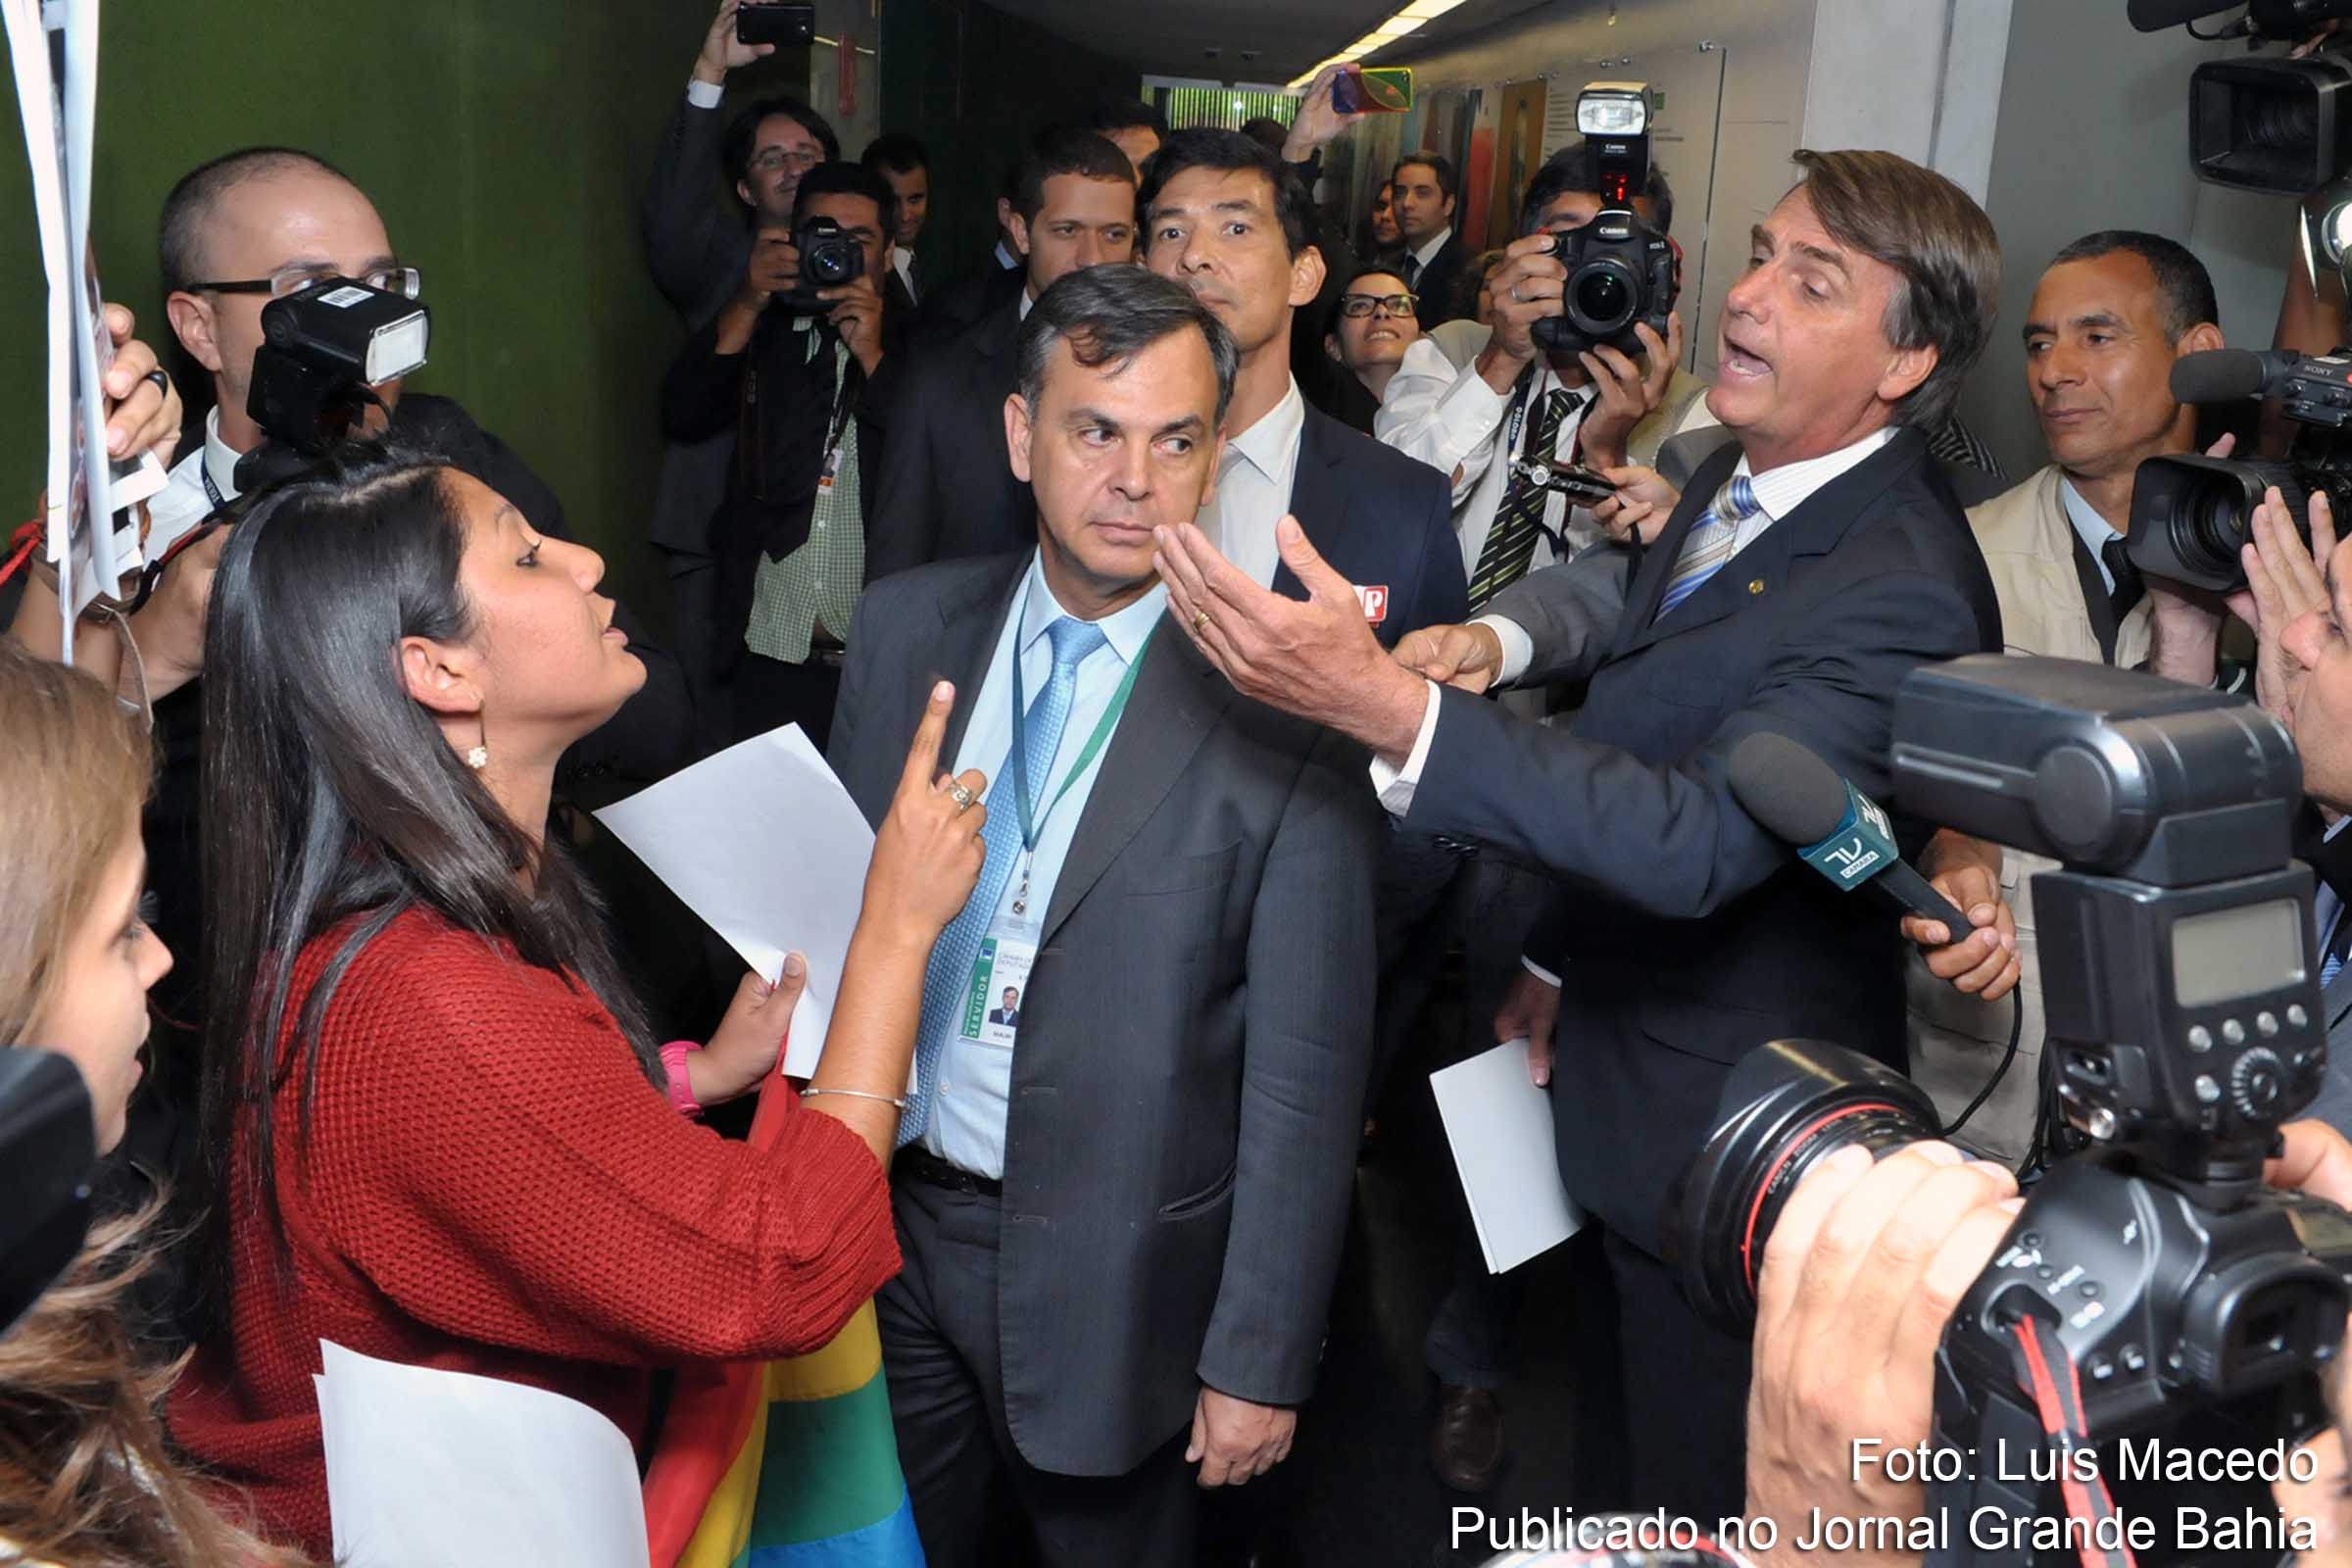 Deputado Jair Bolsonaro, perfil homofóbico e violento. Discurso de Bolsonaro durante votação do impeachment foi criticado por entidades de direitos humanos.